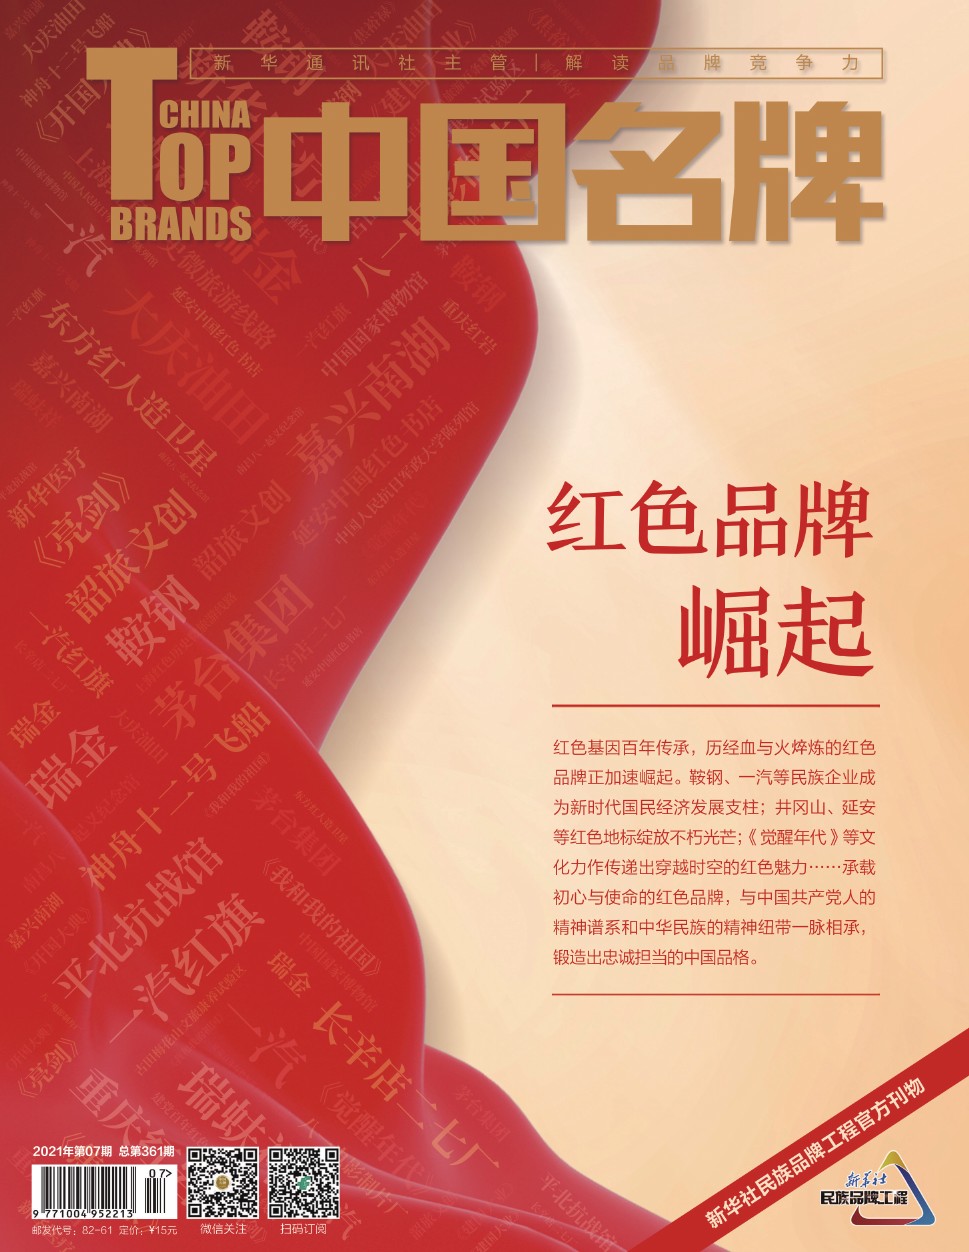 《中国名牌》电子杂志2021年第07期